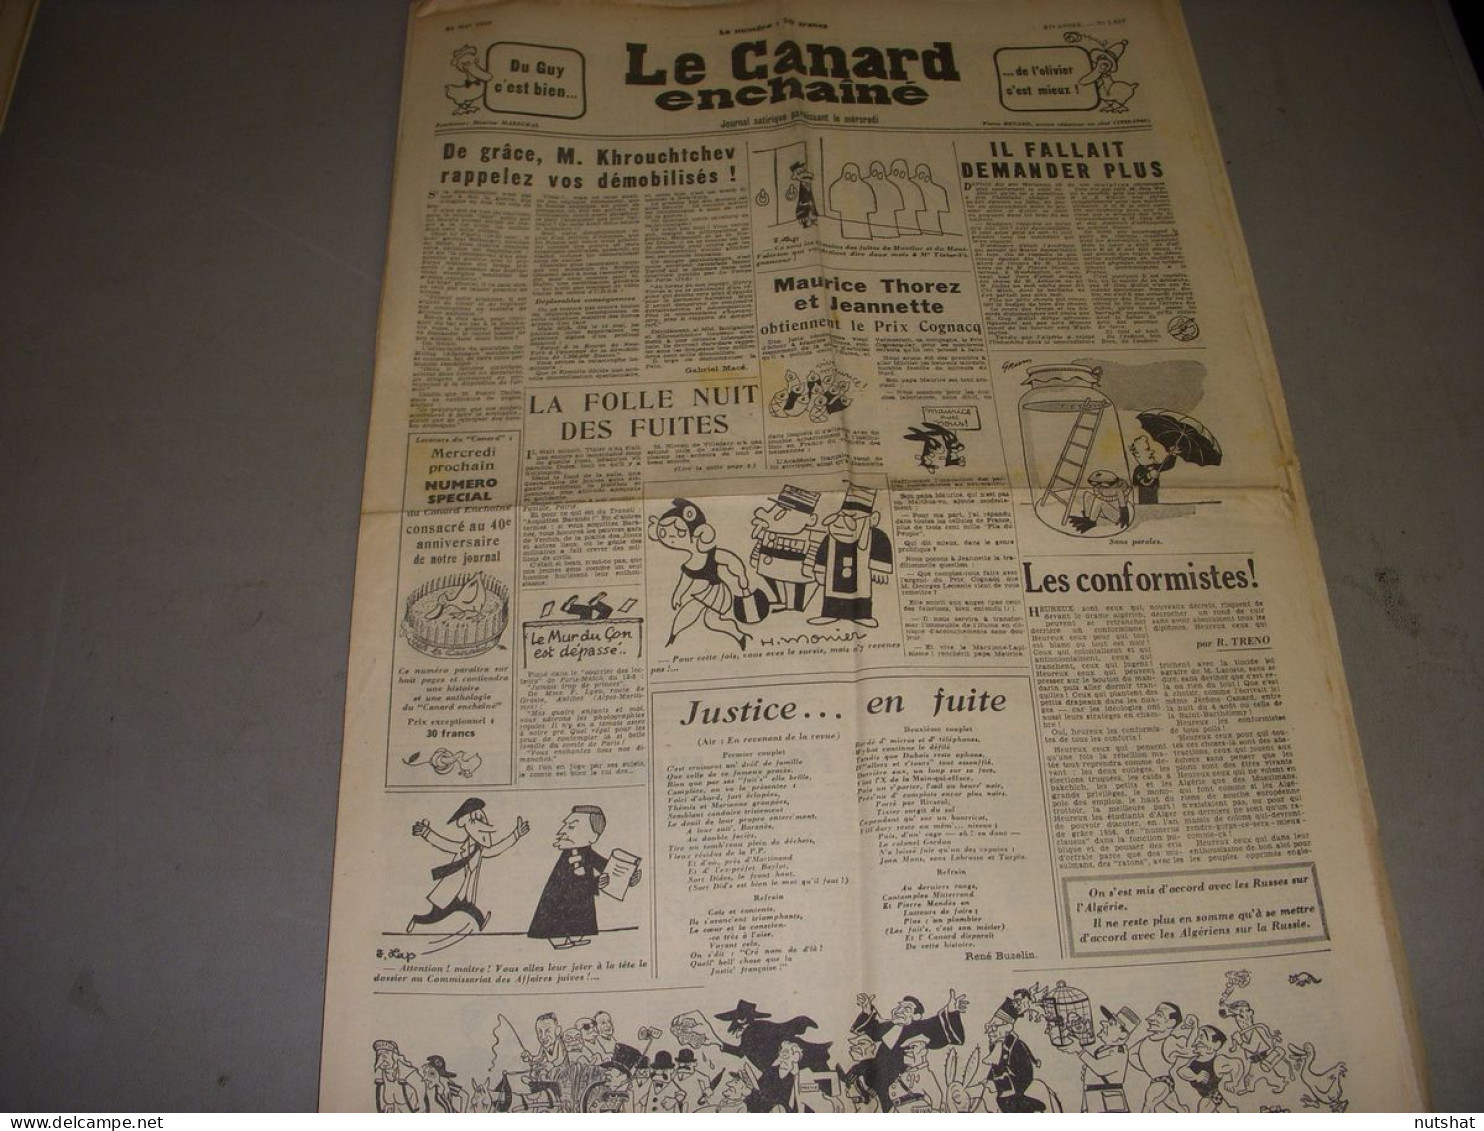 CANARD ENCHAINE 1857 23.05.1956 KHROUCHTCHEV MAURICE THOREZ PROCES Des FUITES - Politics